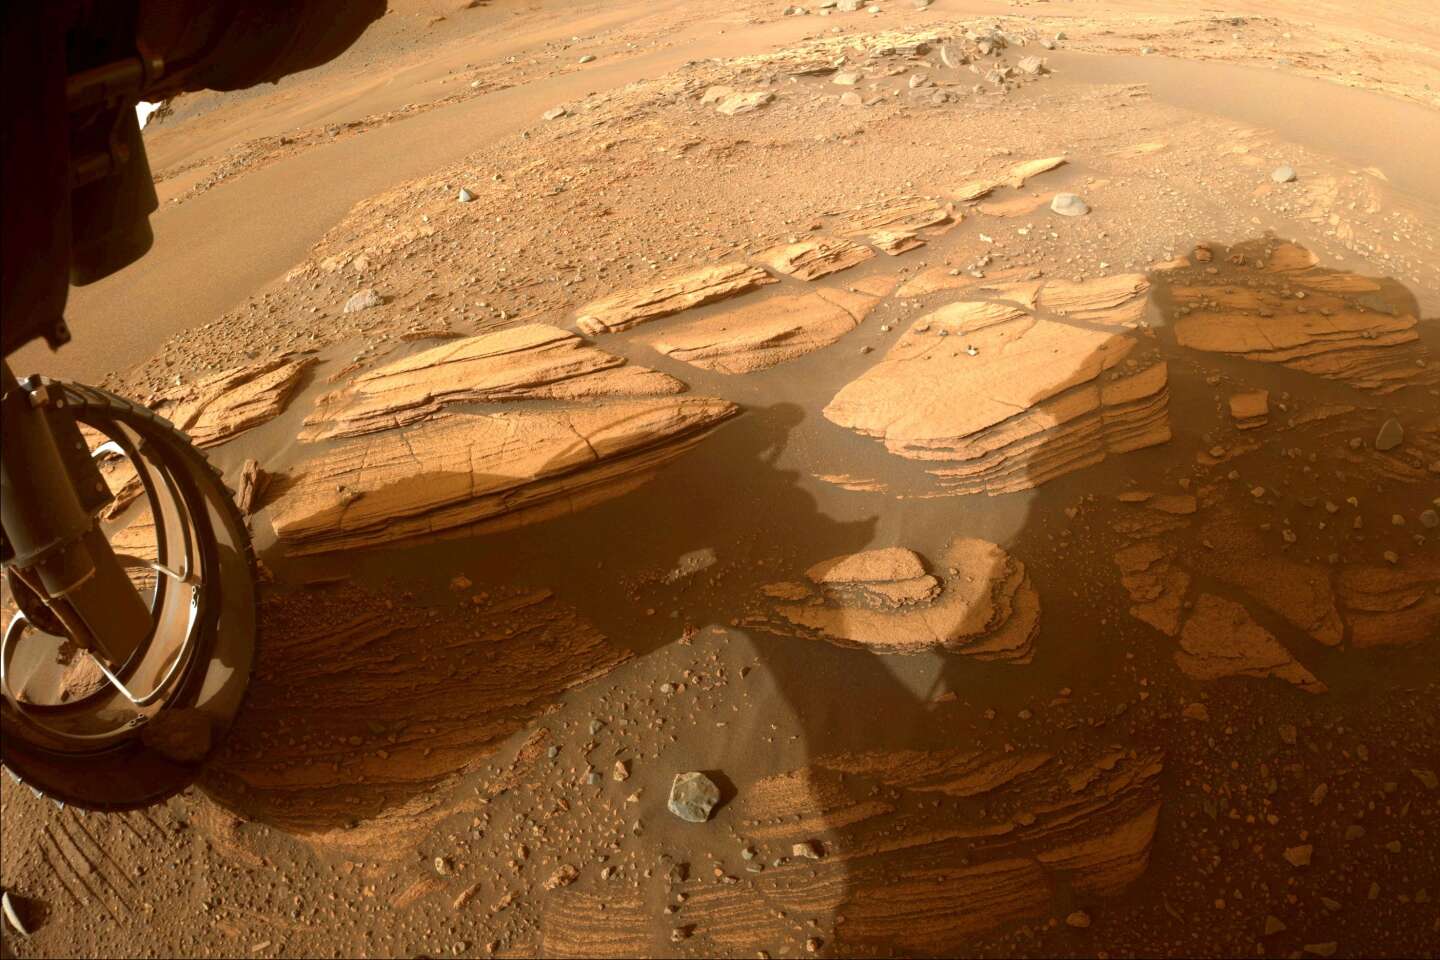 Tout ce qu'il faut savoir sur le sol martien